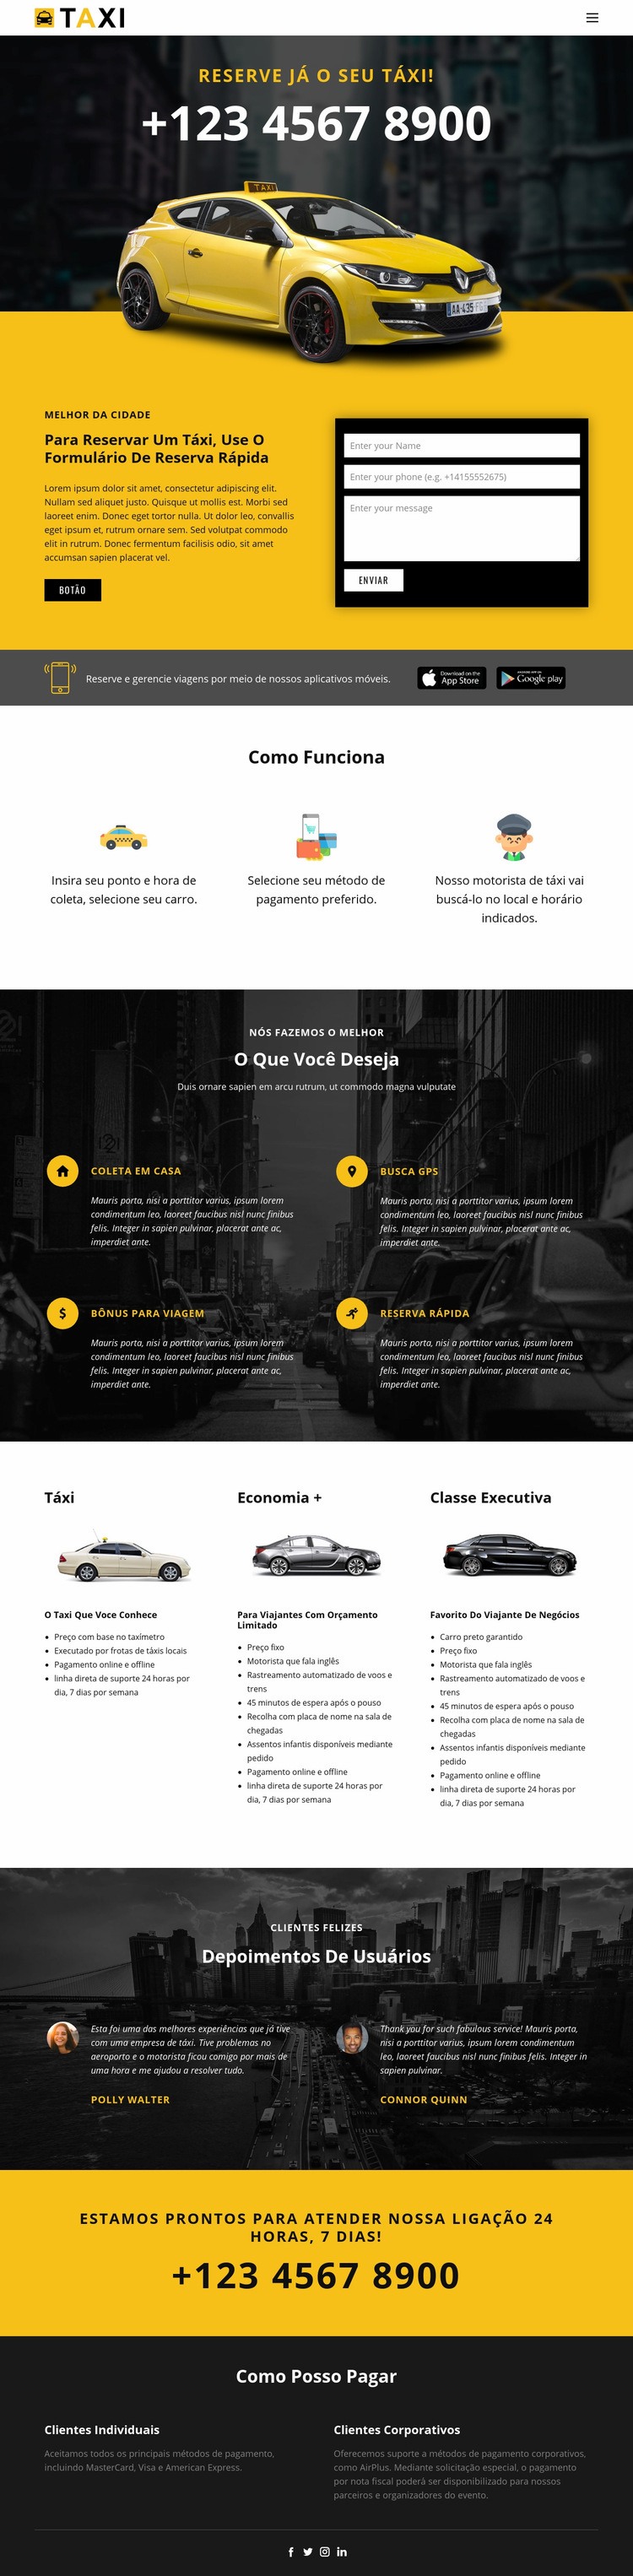 Carros táxi mais rápidos Design do site